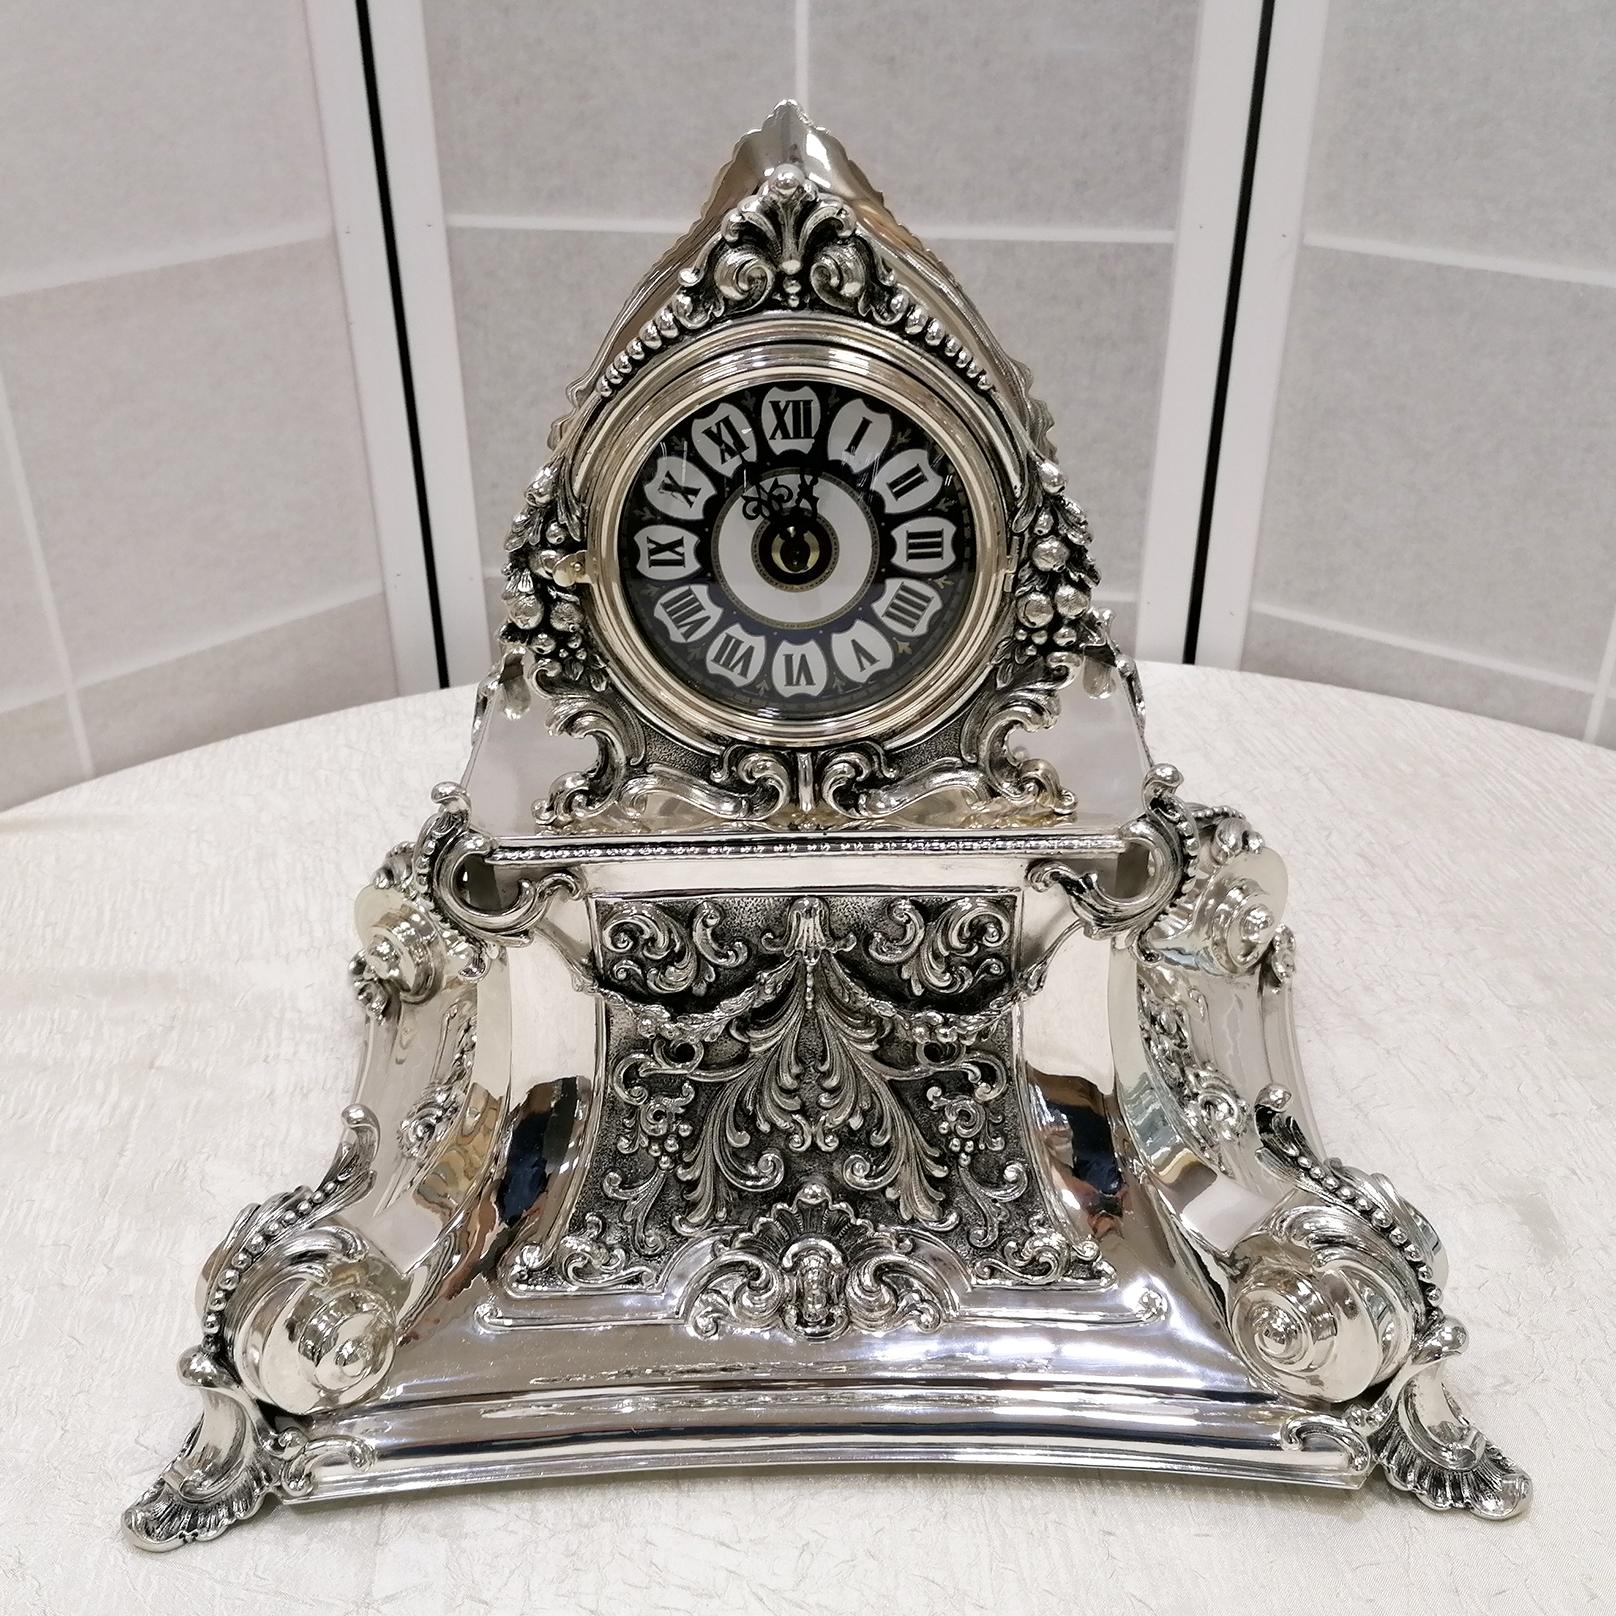 Horloge de table de style baroque italien, en tôle d'argent repoussée avec des tourbillons typiques du style baroque. Des détails moulés décorent ses quatre côtés et sa couronne.
Le cadran est en céramique émaillée et le mouvement est